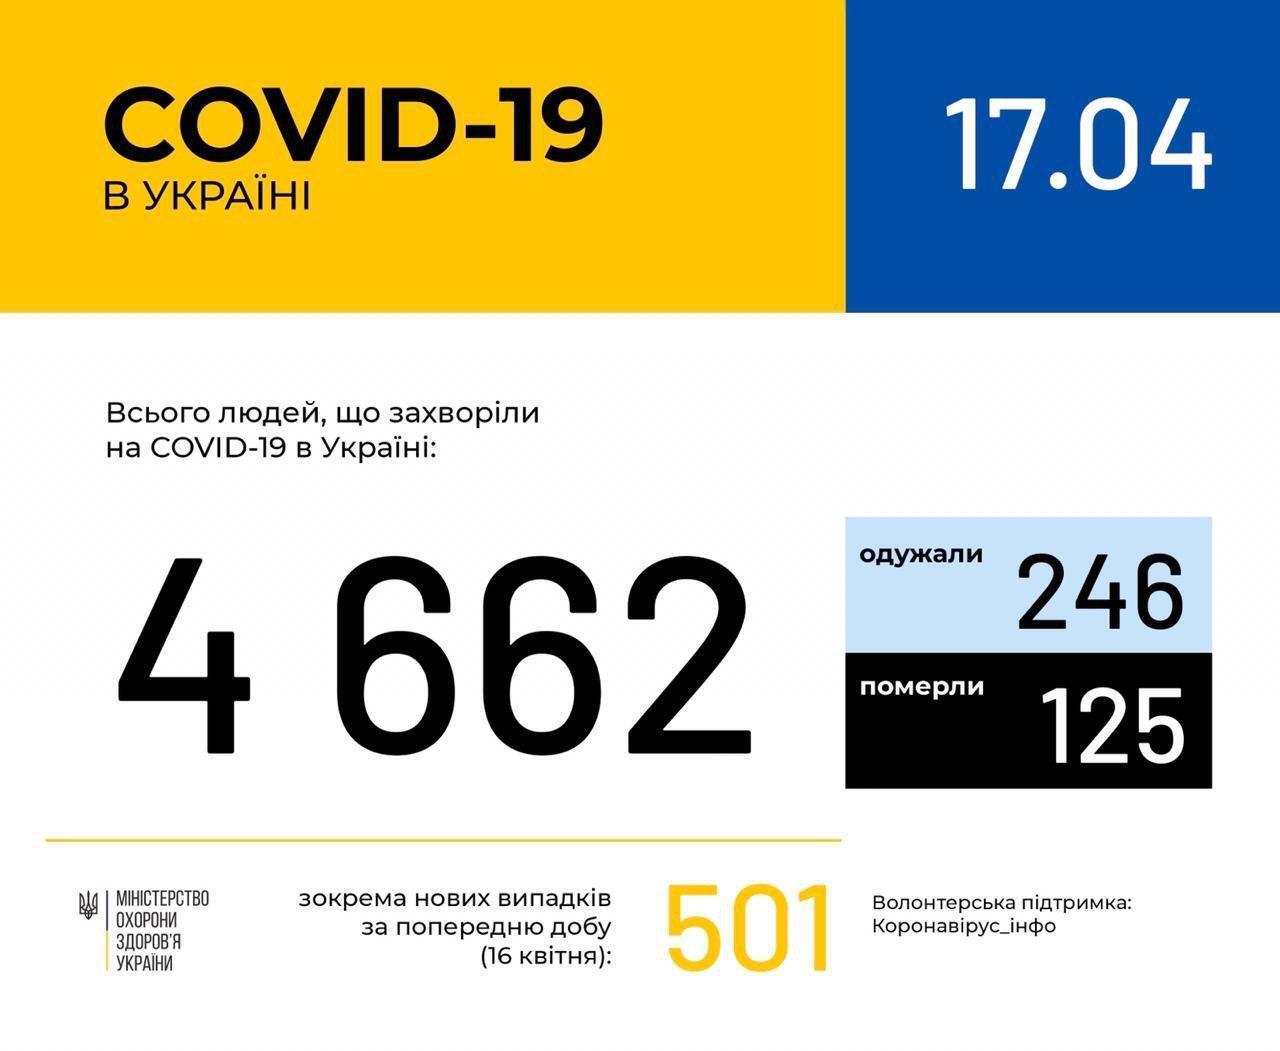 Коронавирус снова разгорелся в Украине и мире: статистика на 17 апреля. Постоянно обновляется